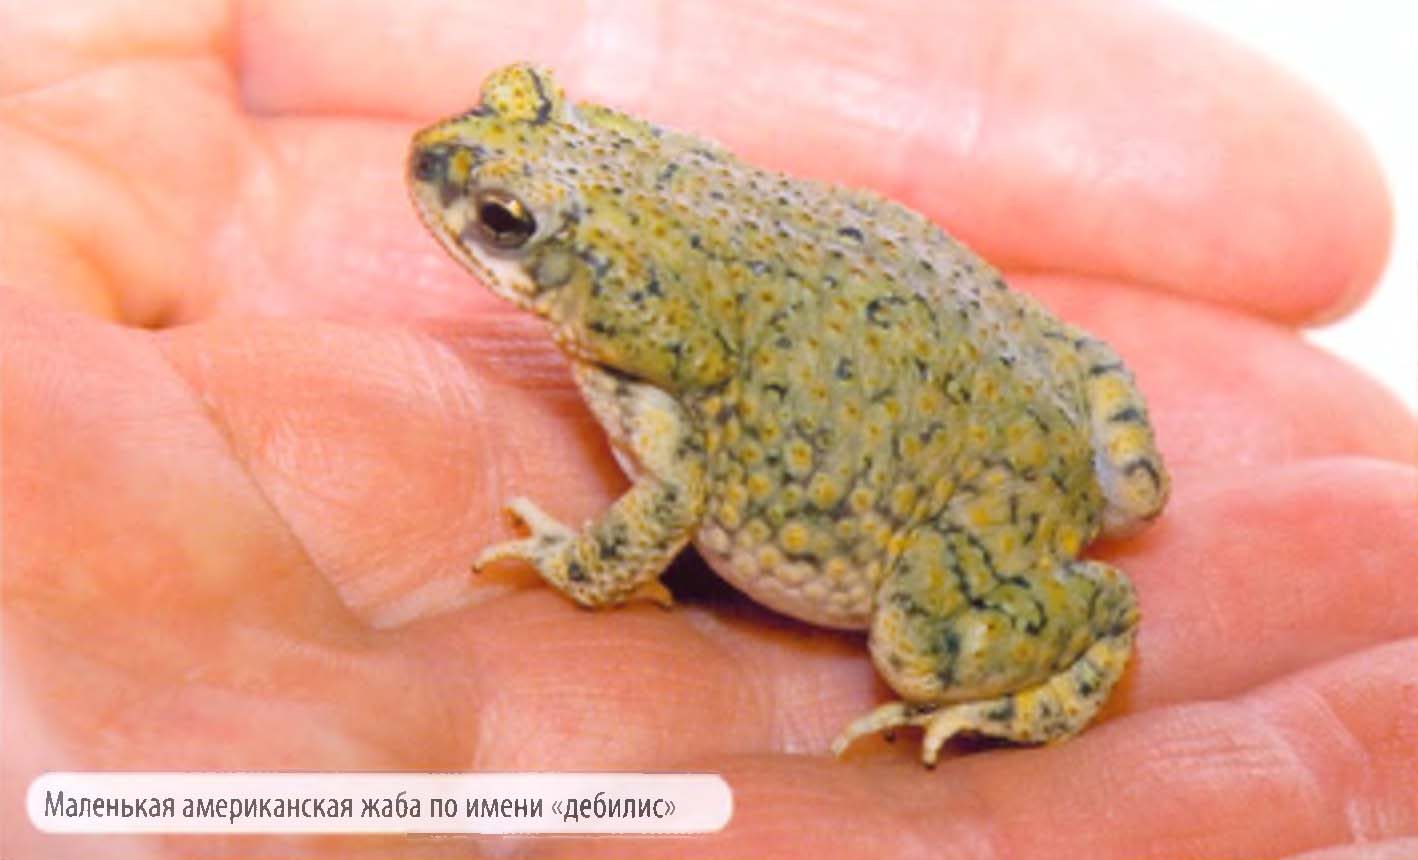 Маленькая американская жаба по имени «дебилис».